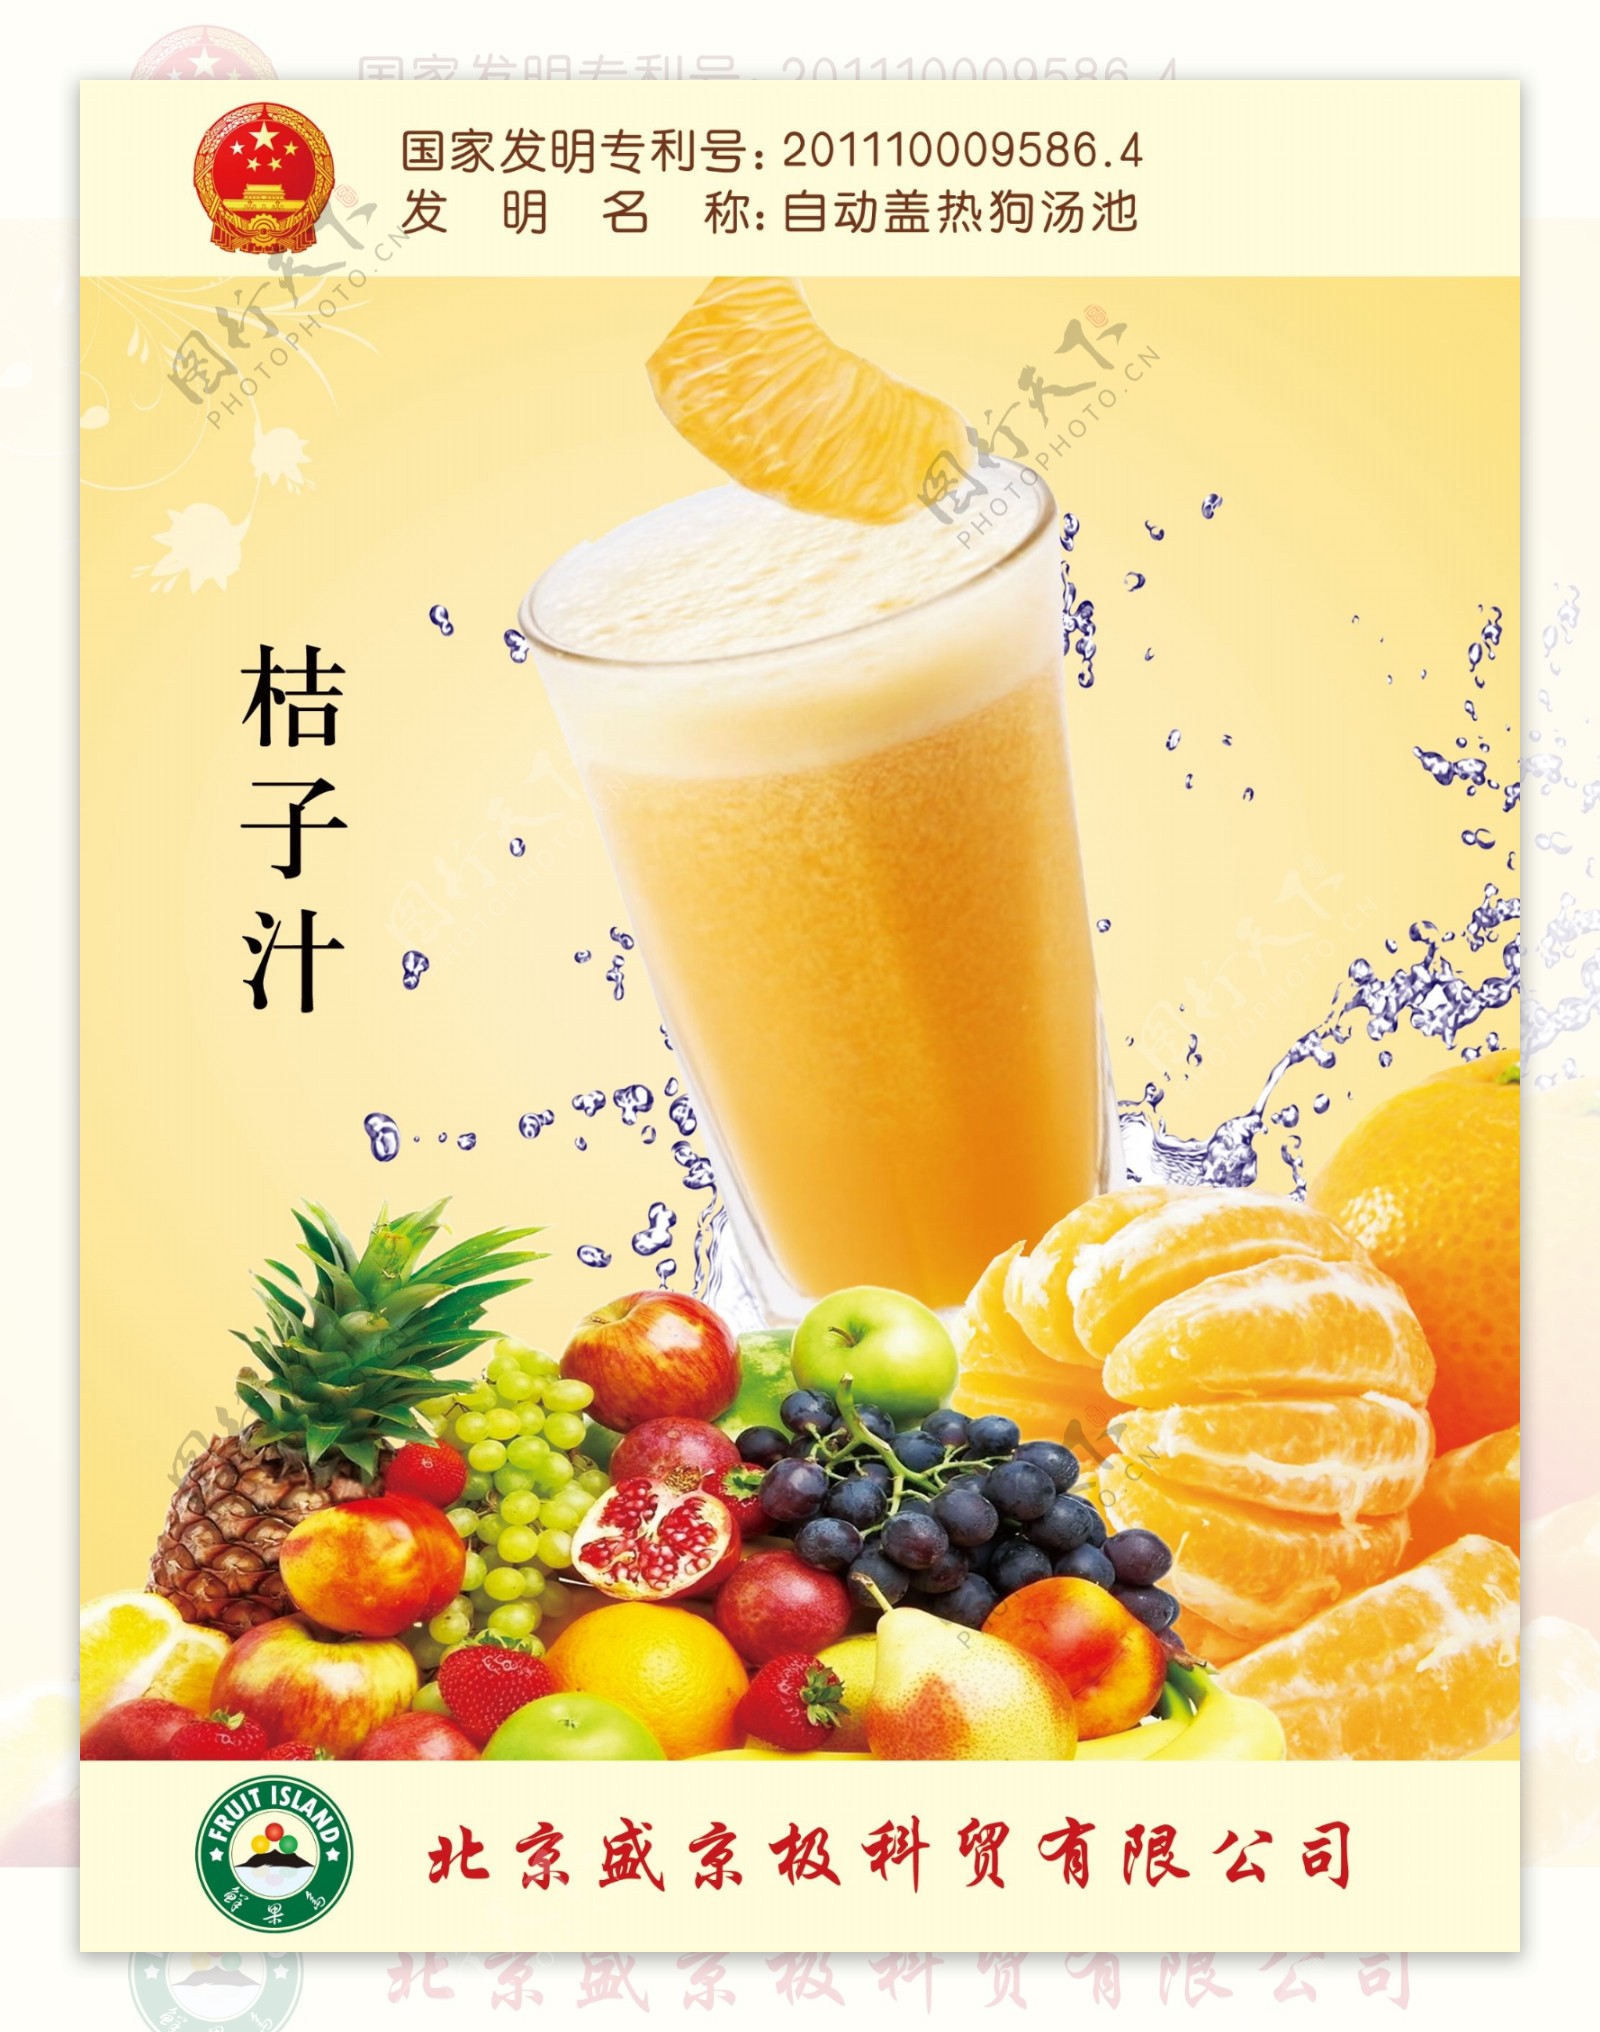 桔子汁海报图片